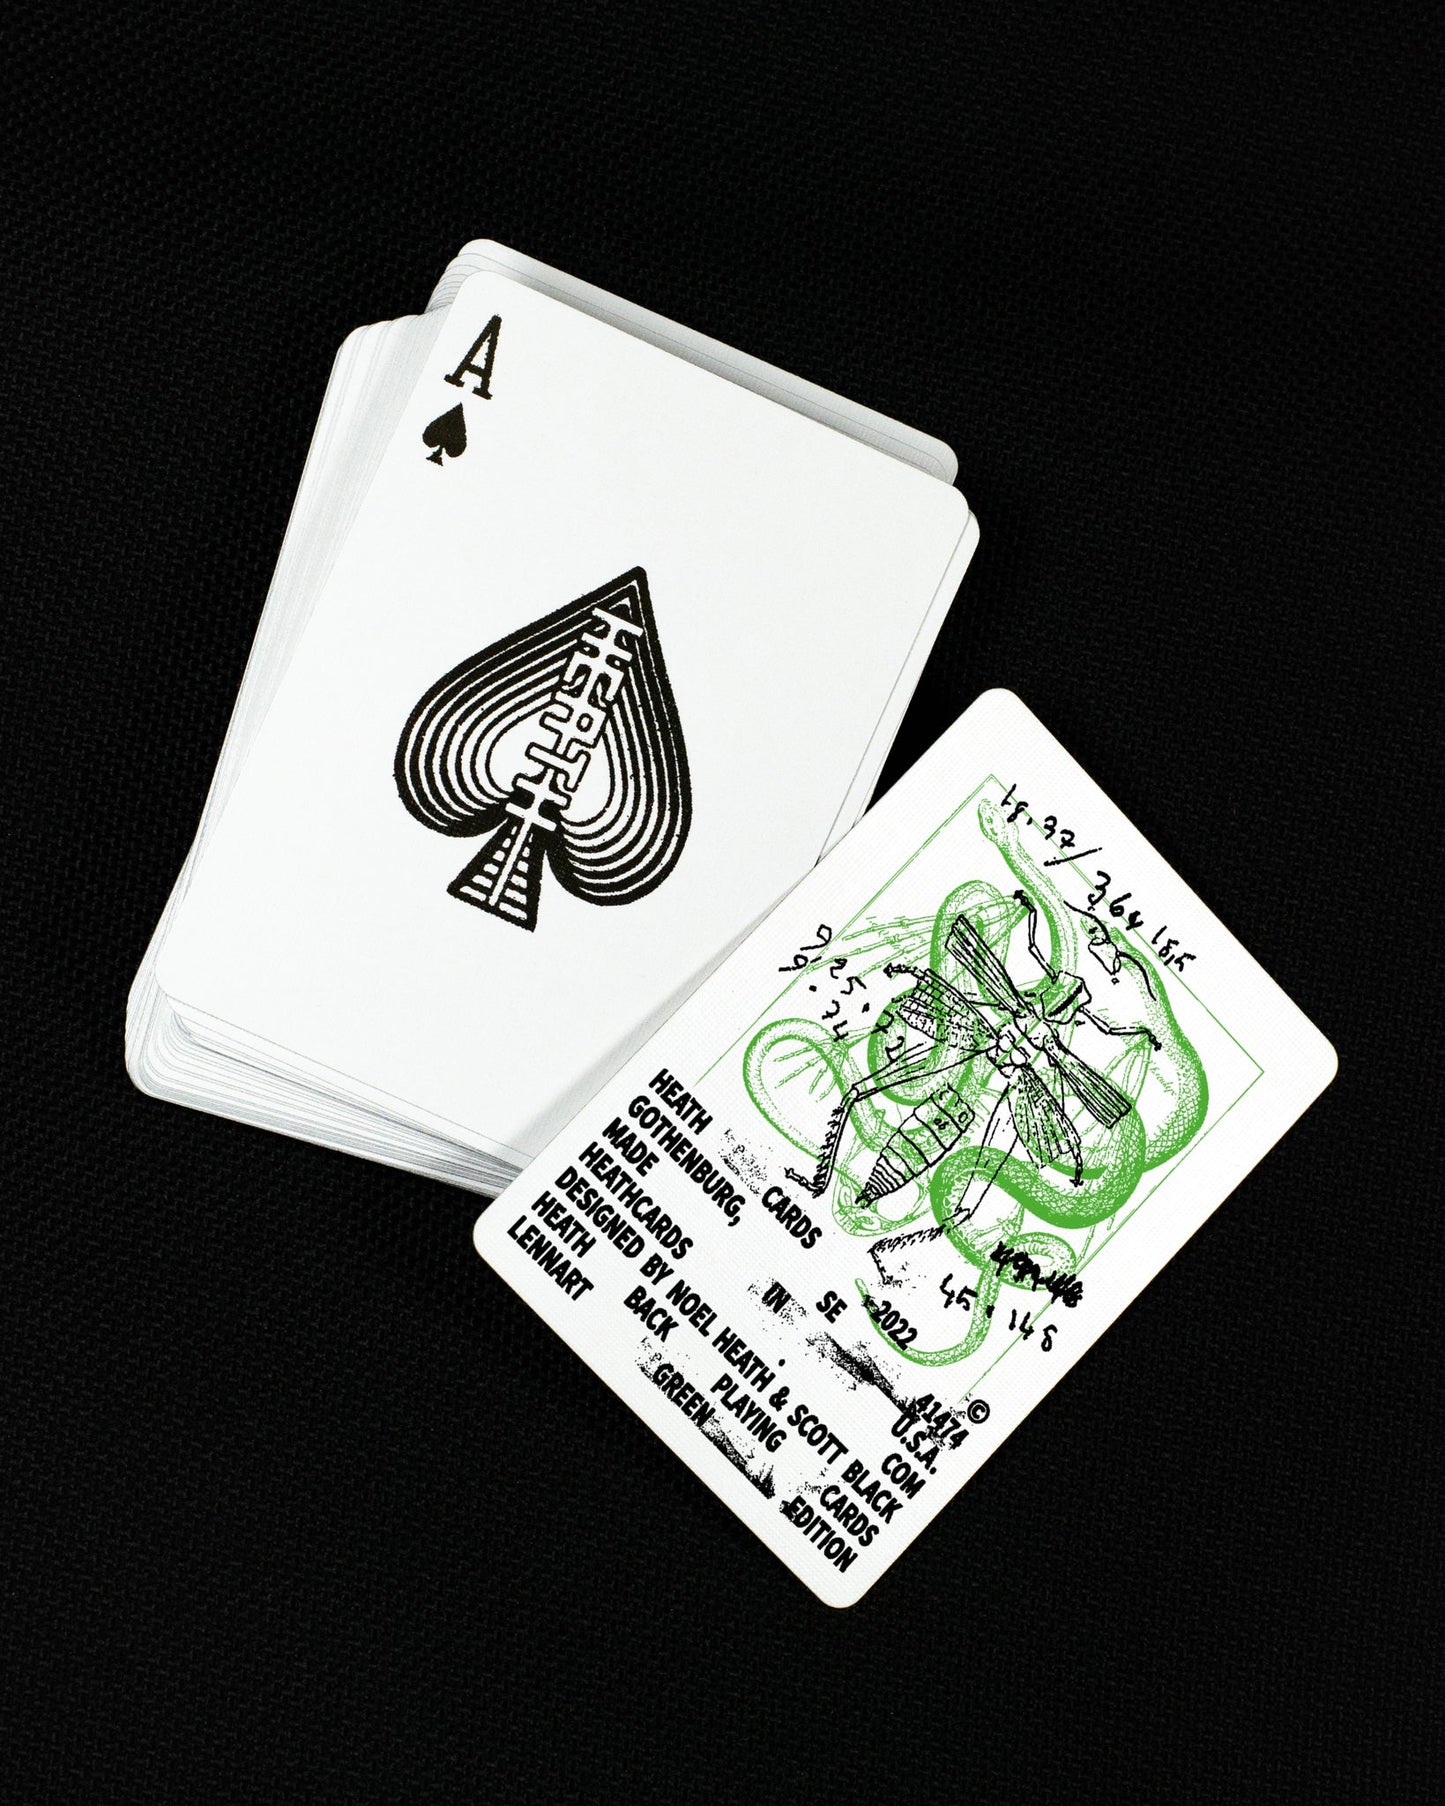 Heath Back Playing Cards by Heath